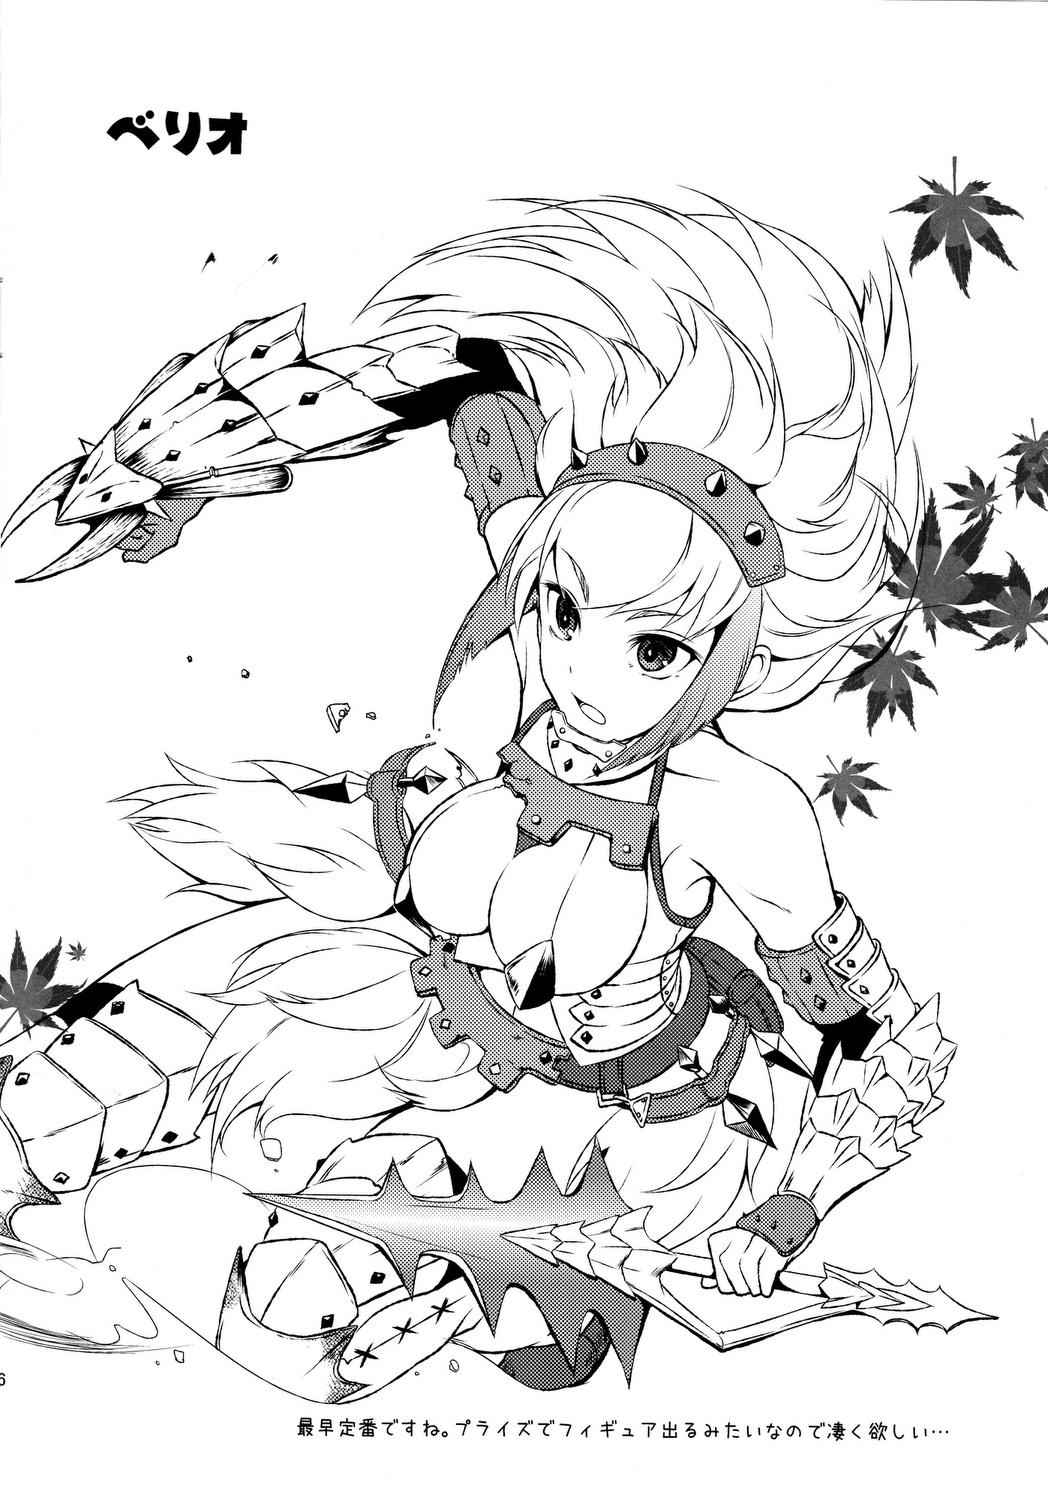 Safadinha Shuryou Shoujo 7 - Monster hunter Foot Job - Page 5